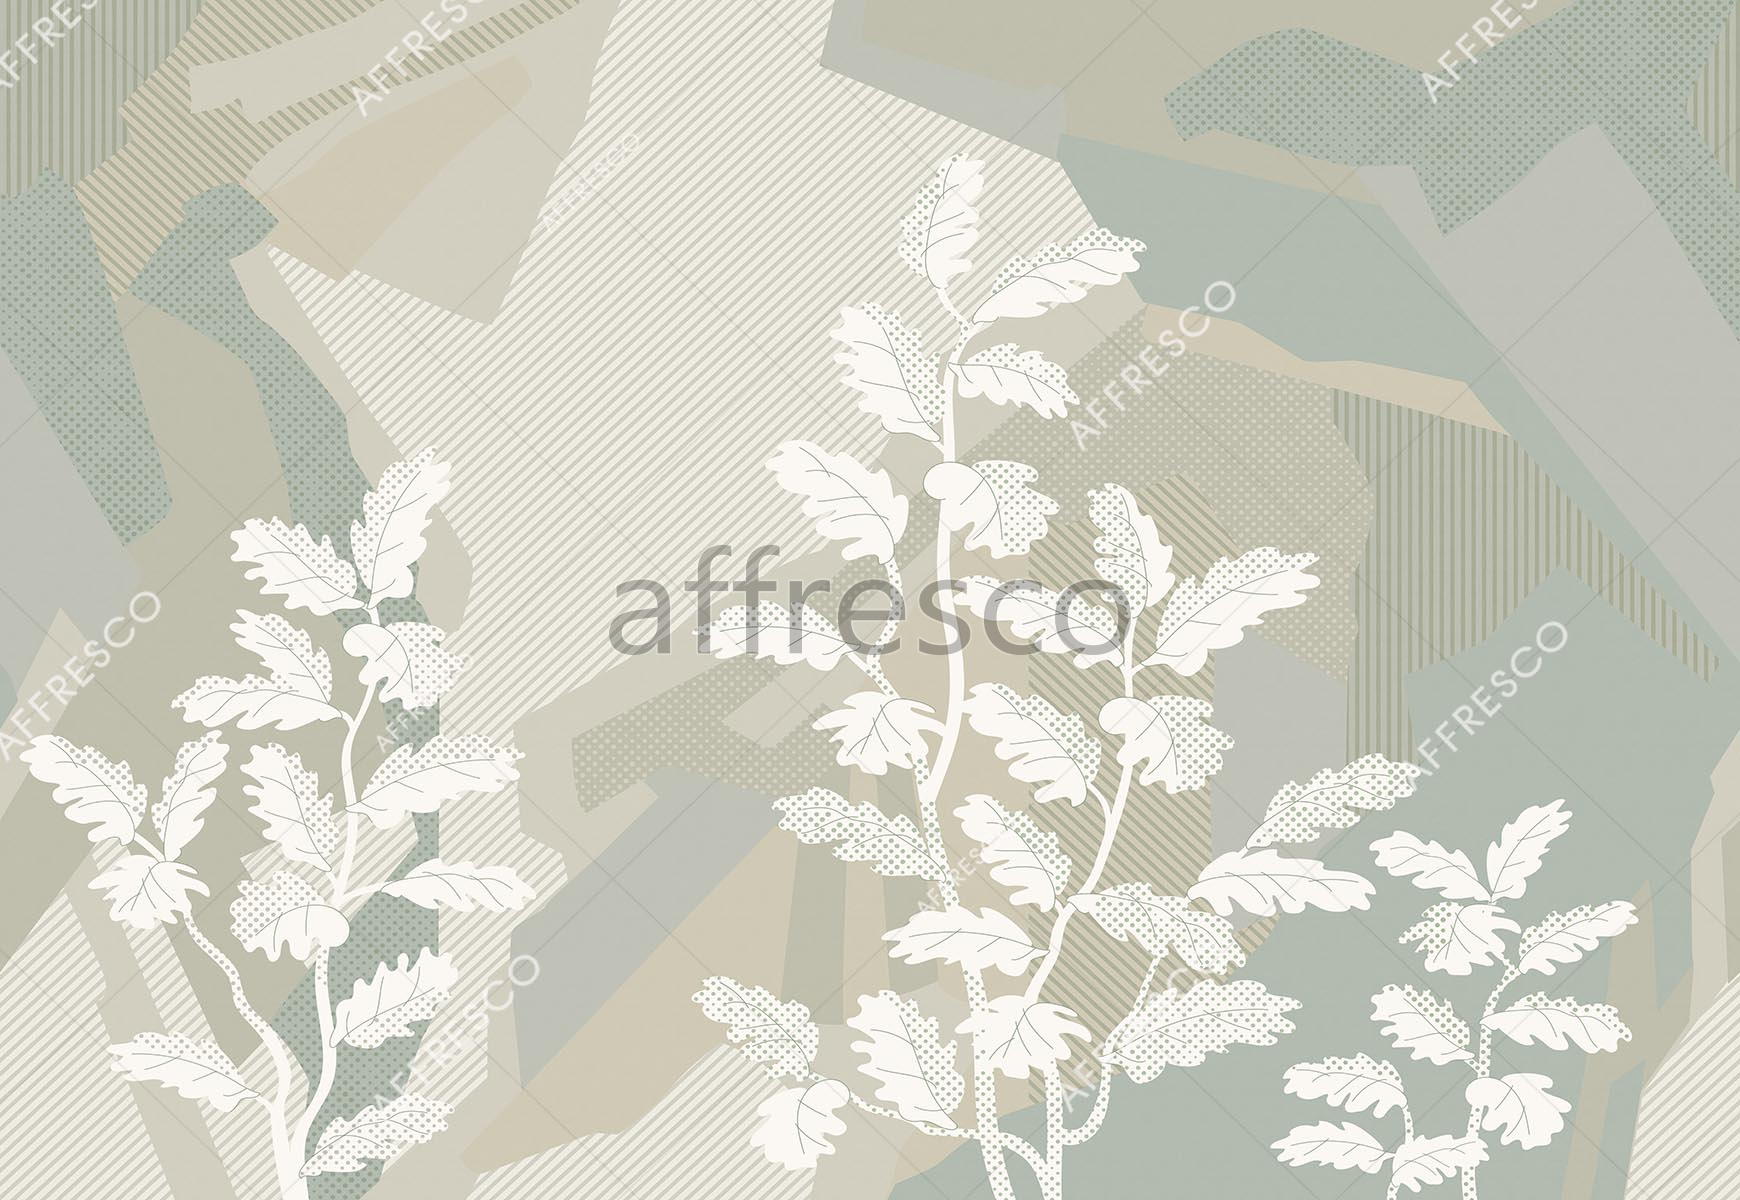 ID139318 | Graphics arts & Ornaments |  | Affresco Factory